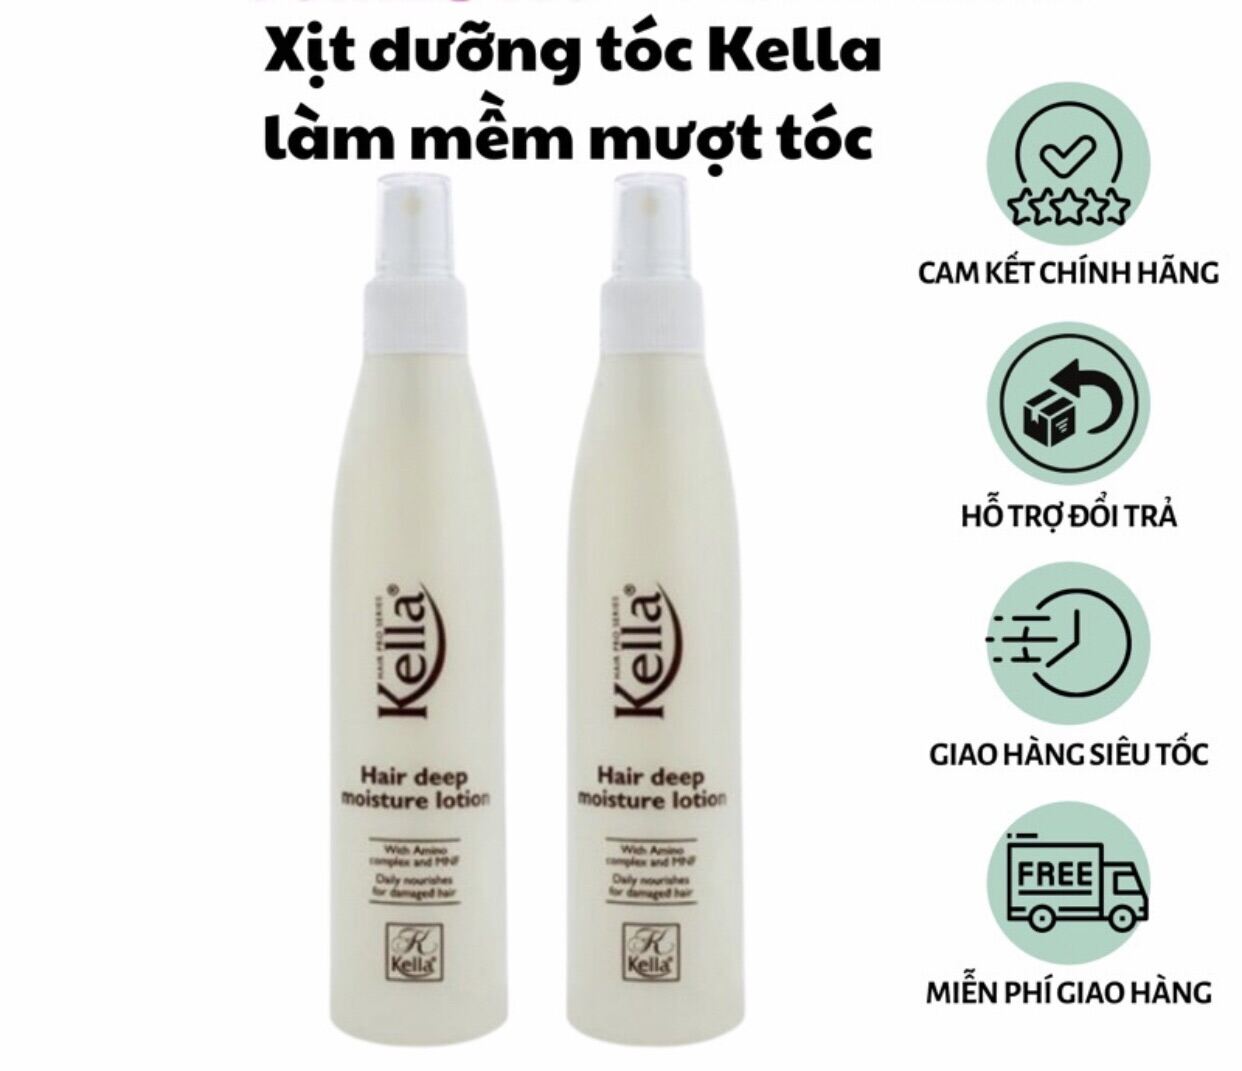 Chính Hãng  XỊt Sữa dưỡng Kella làm mềm mượt tóc 250ml - hair deep